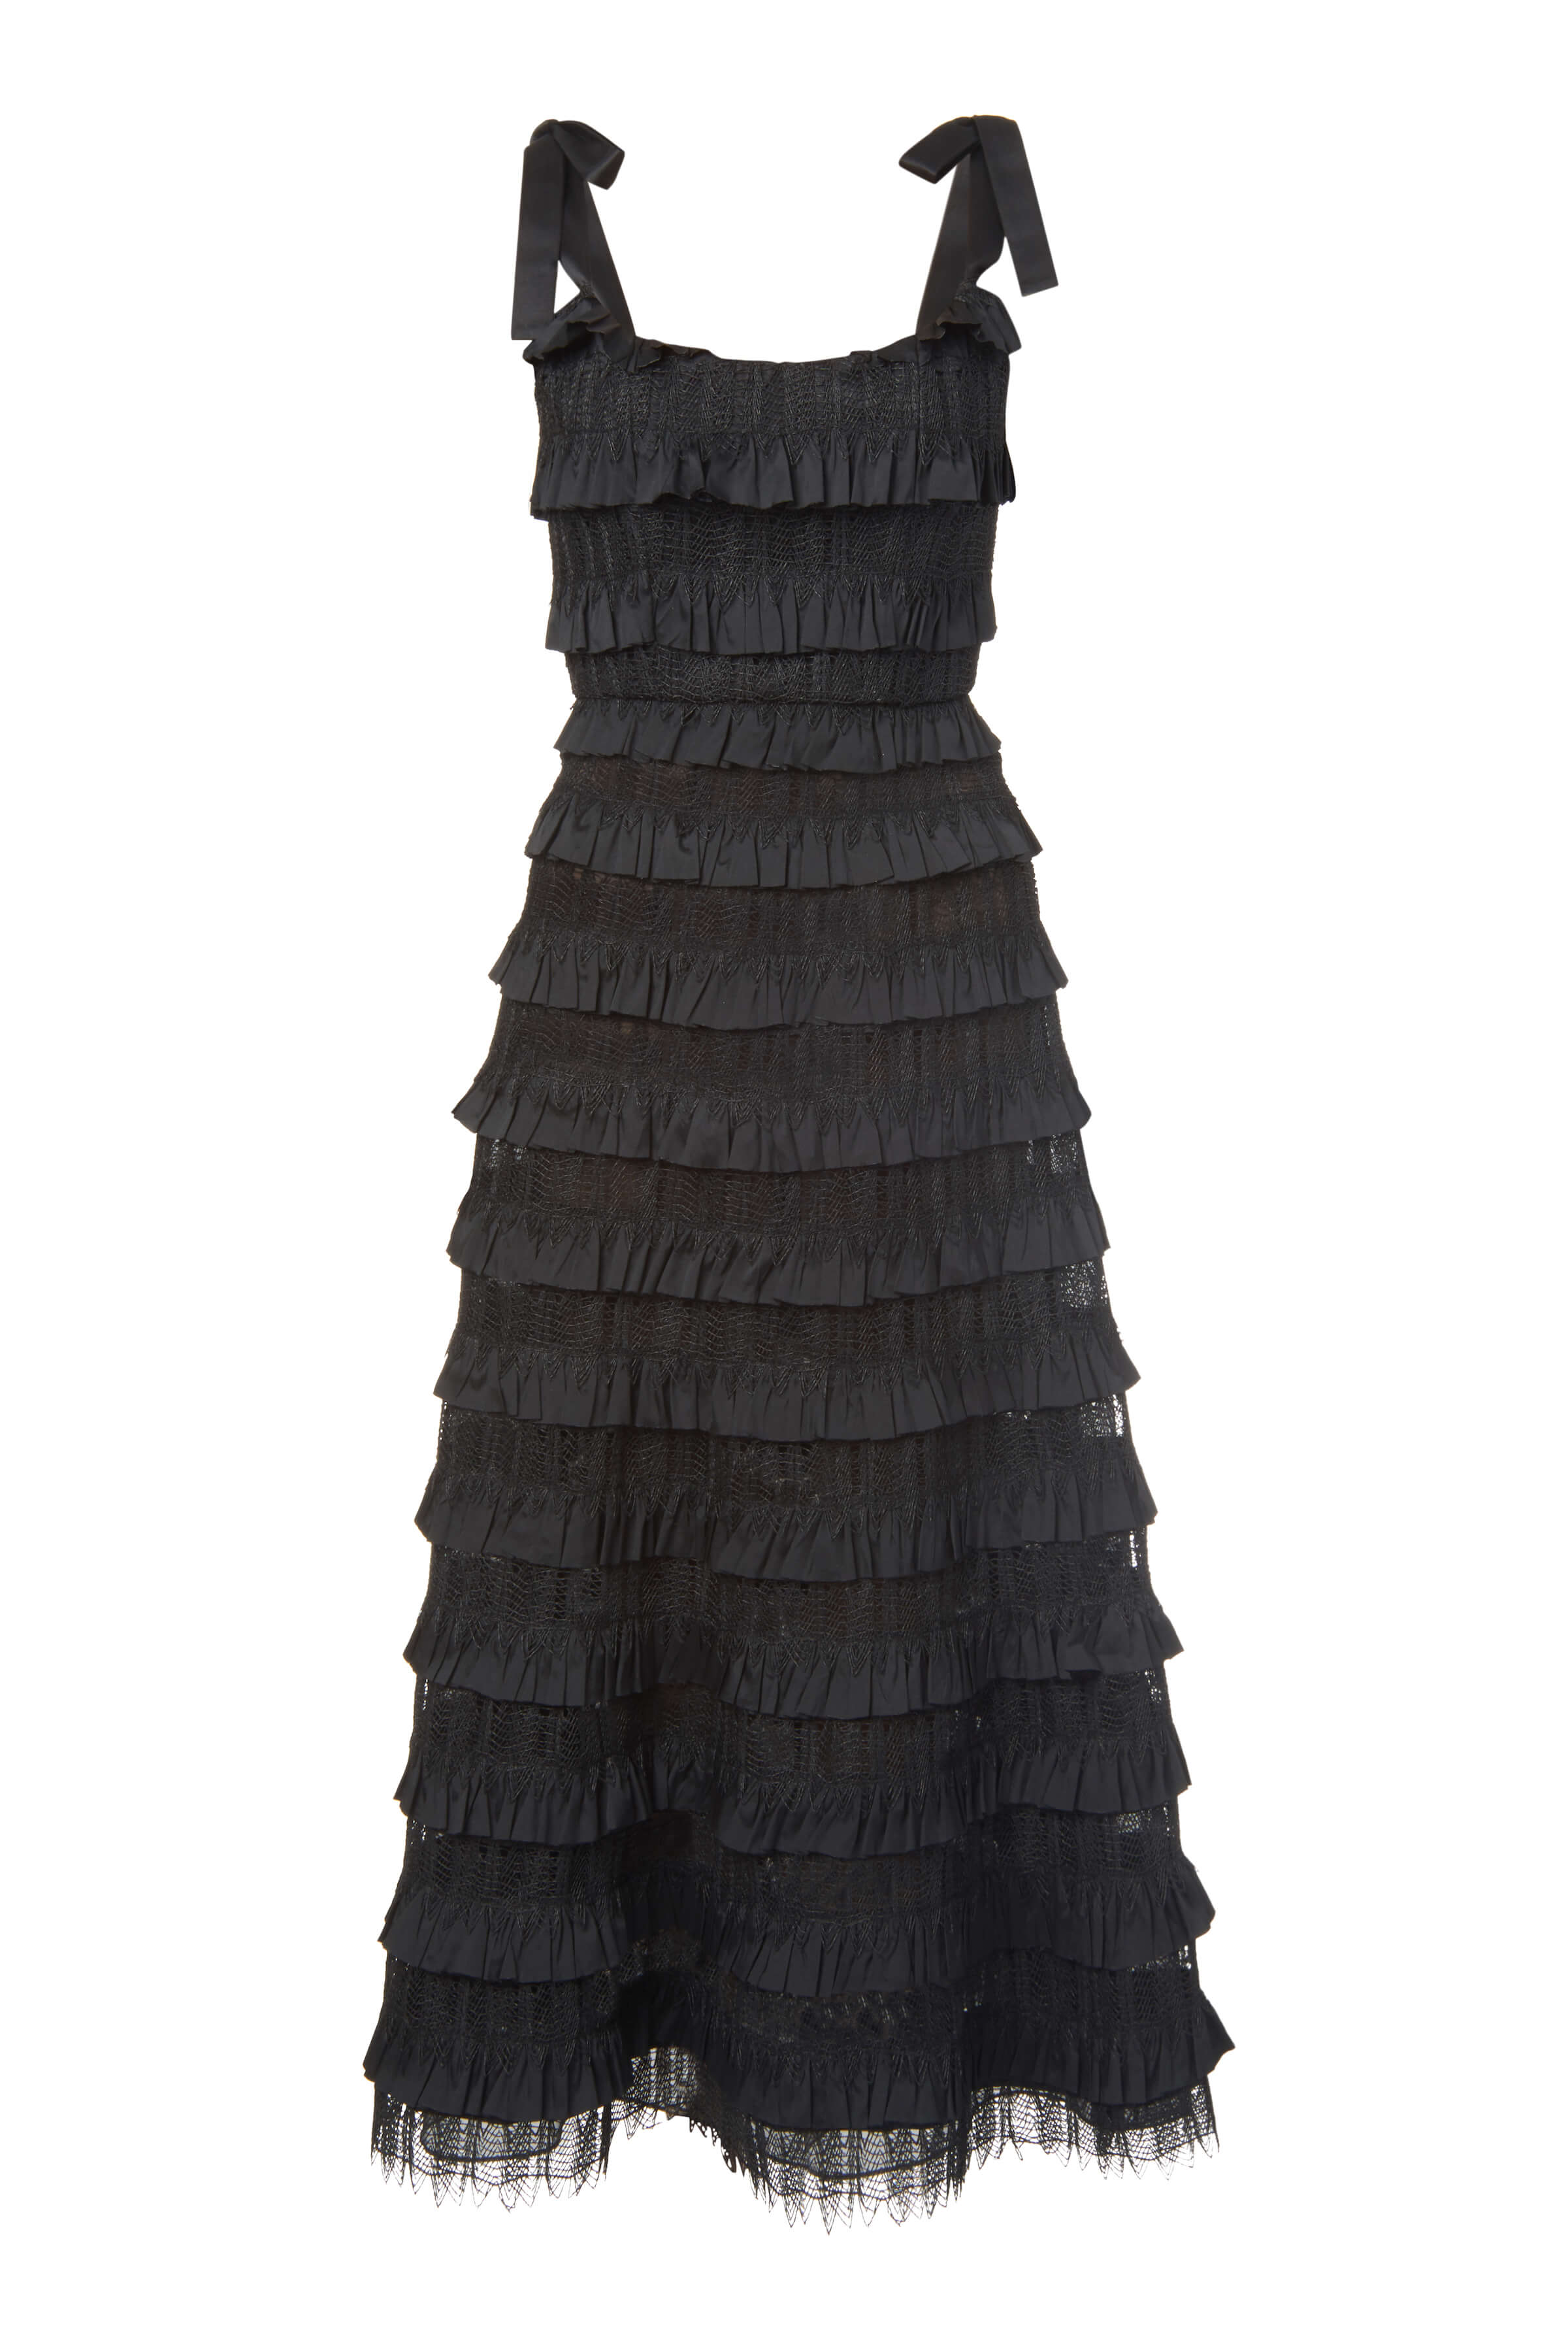 Giselle Black Ruffle Corset Dress